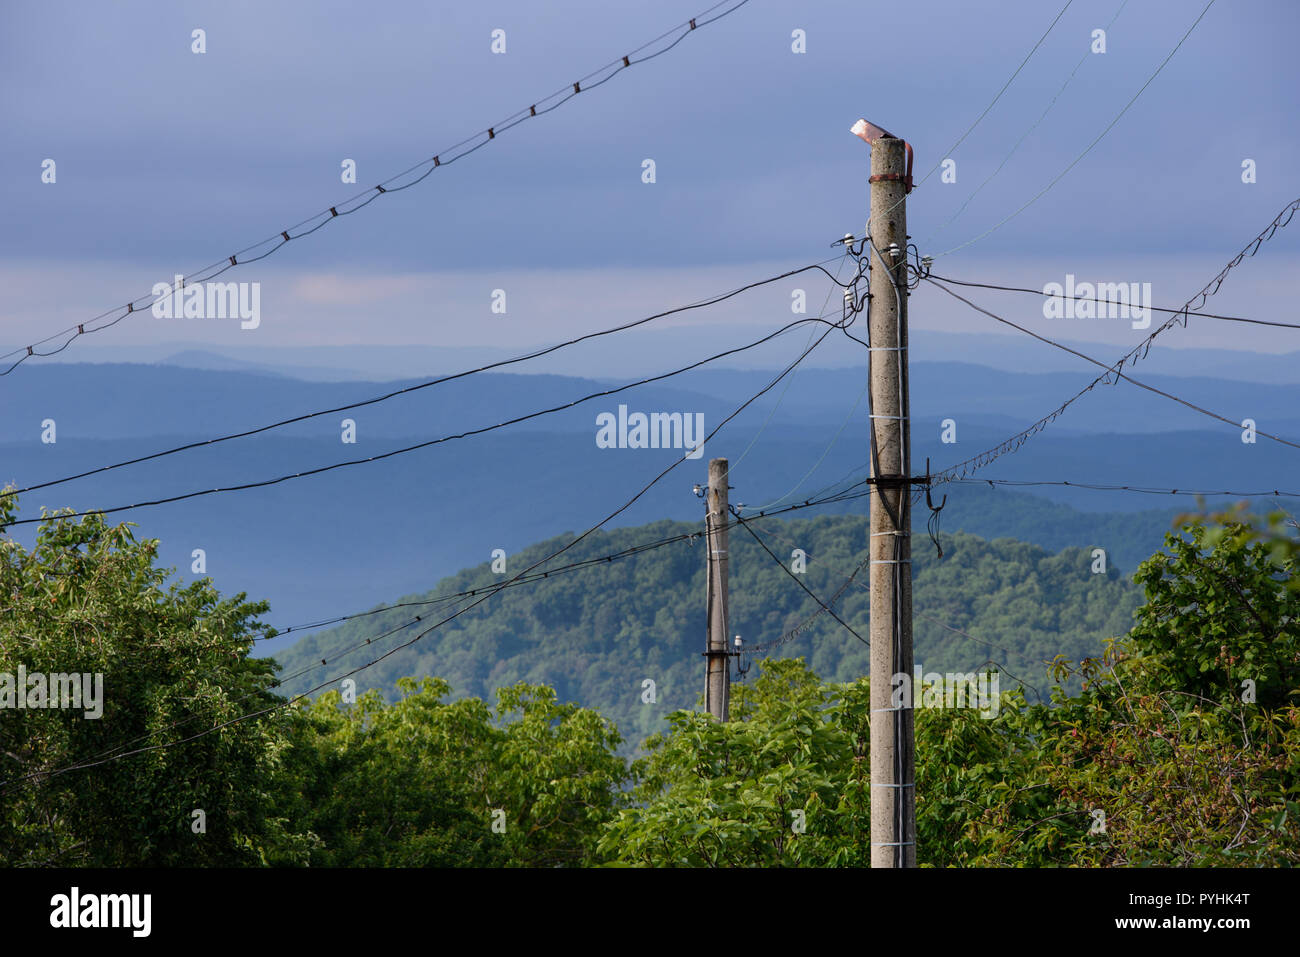 Le paysage bulgare avec les câbles électriques suspendus dans toutes les directions à partir d'un vieux pilier en béton. Région de montagne Strandja Banque D'Images